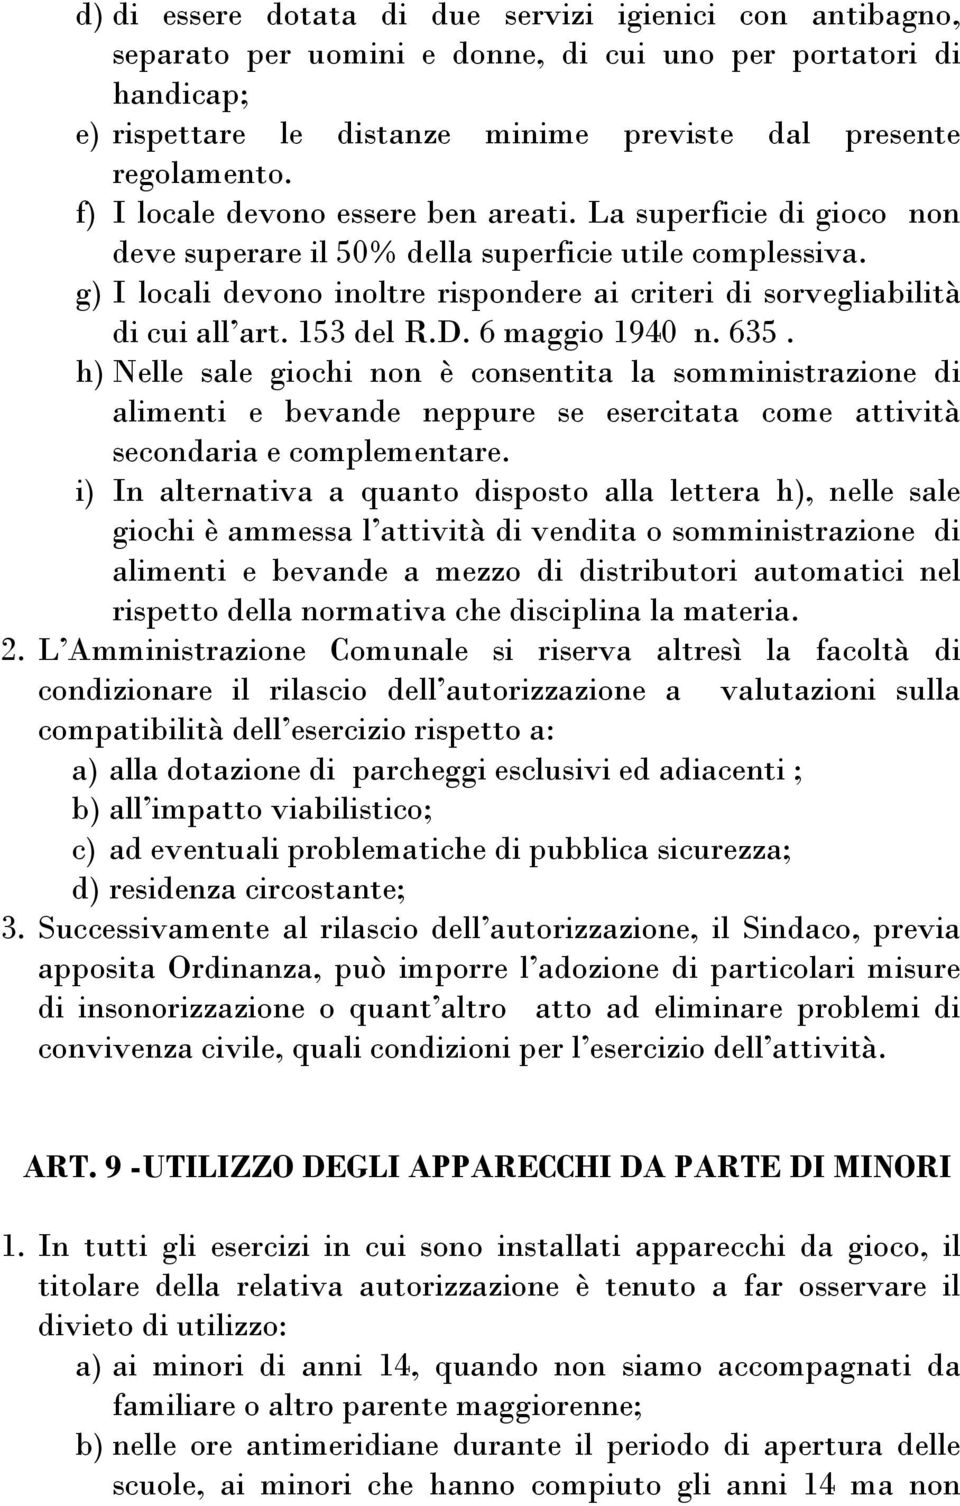 g) I locali devono inoltre rispondere ai criteri di sorvegliabilità di cui all art. 153 del R.D. 6 maggio 1940 n. 635.